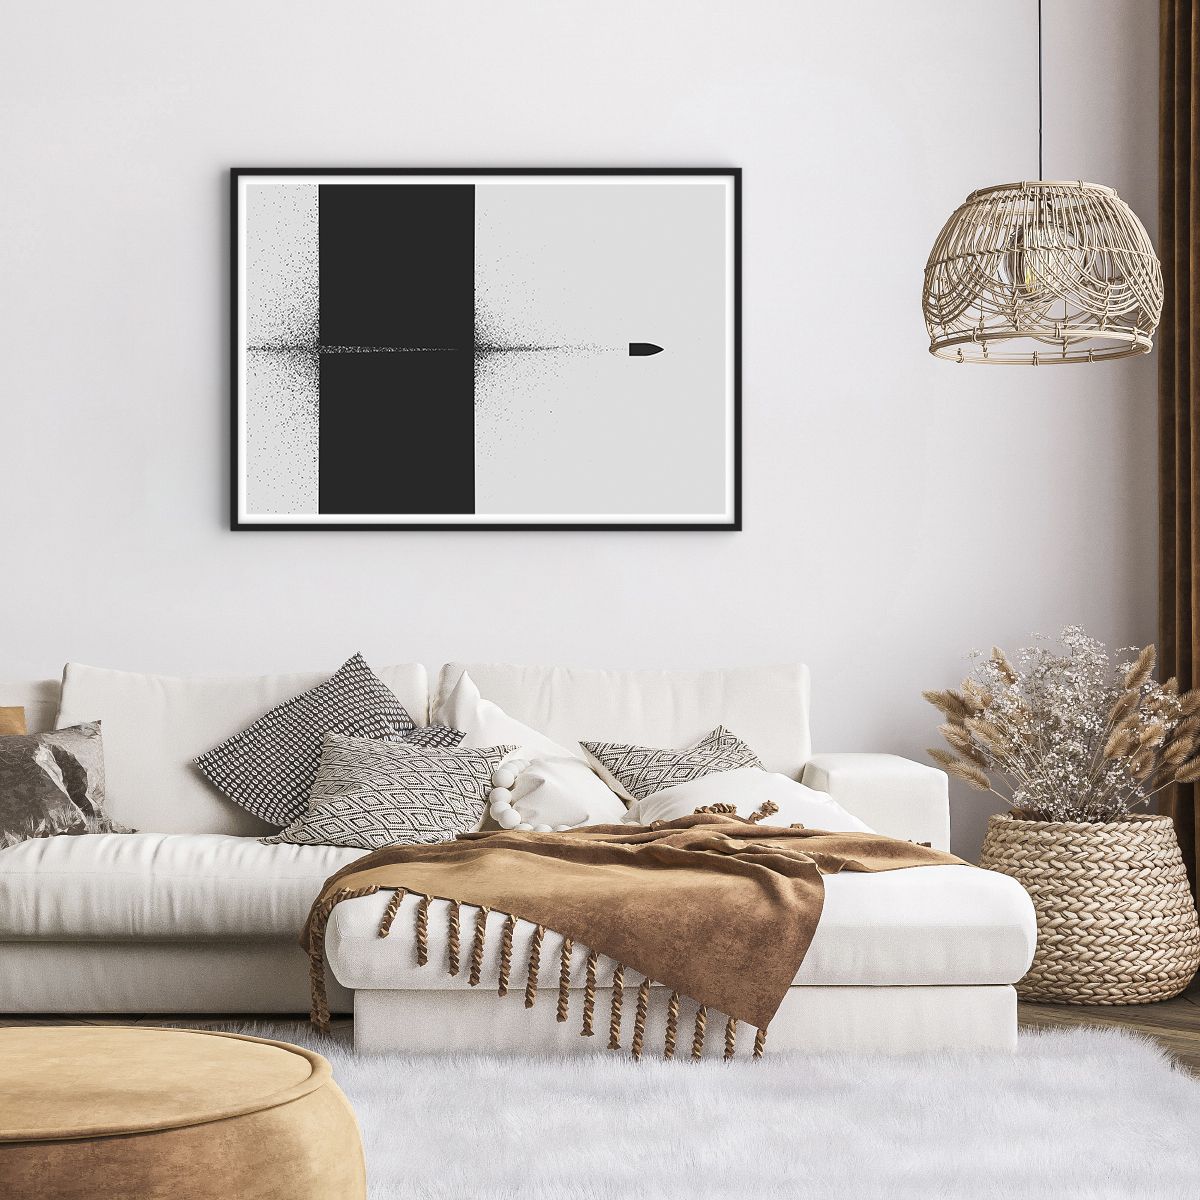 Affiche dans un cadre noir Balle, Affiche dans un cadre noir Noir Et Blanc, Affiche dans un cadre noir Abstraction, Affiche dans un cadre noir Art, Affiche dans un cadre noir Art Moderne